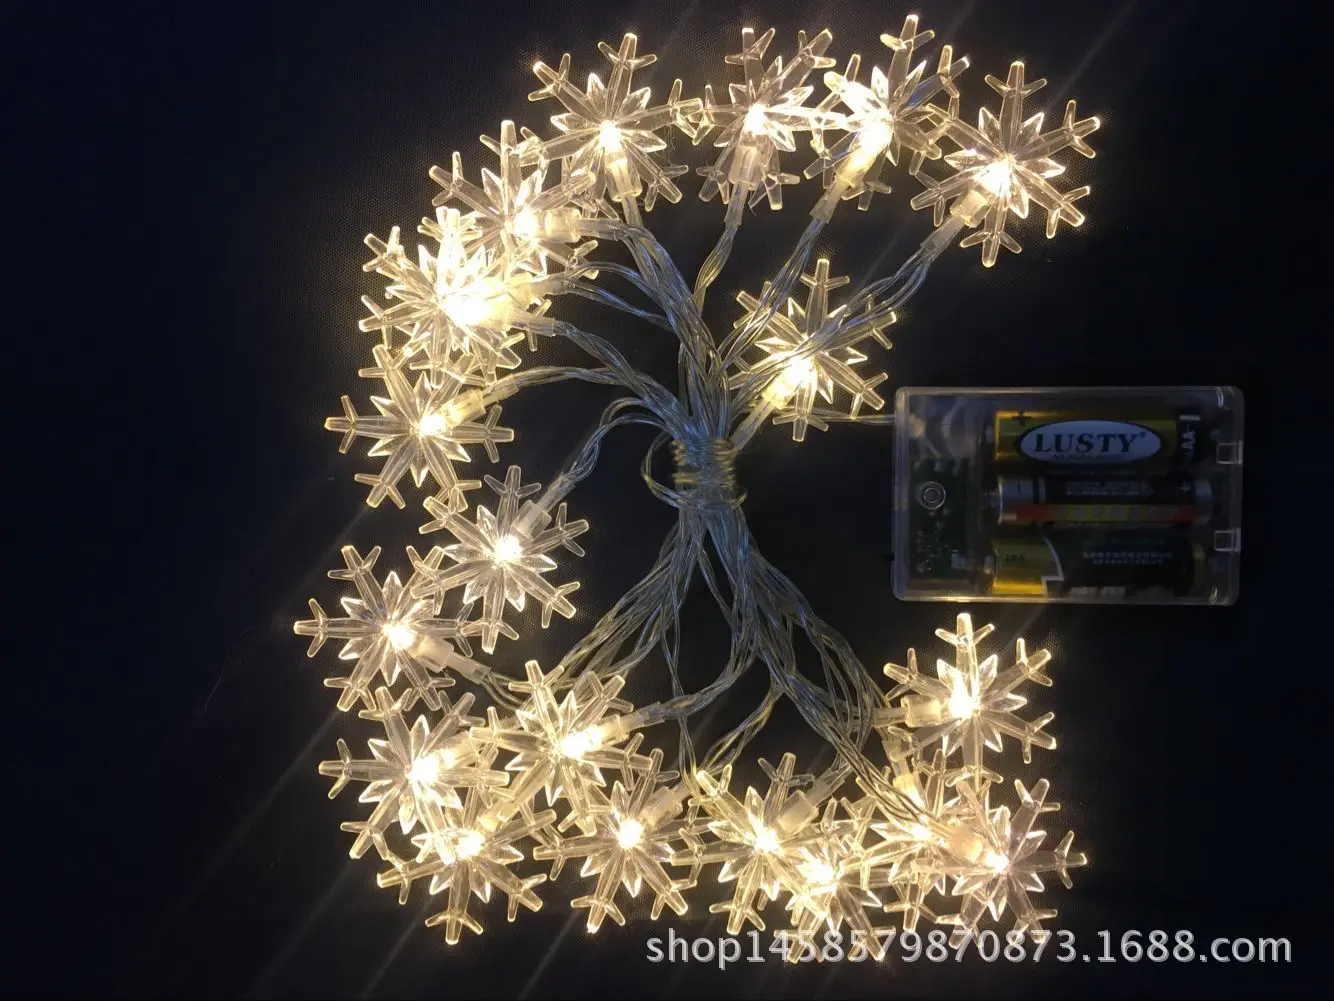 Праздничные светодиодные лампы Снежинка пушистый шар-батарея освещение цепи напрямую от производителя продажа Рождество День рождения